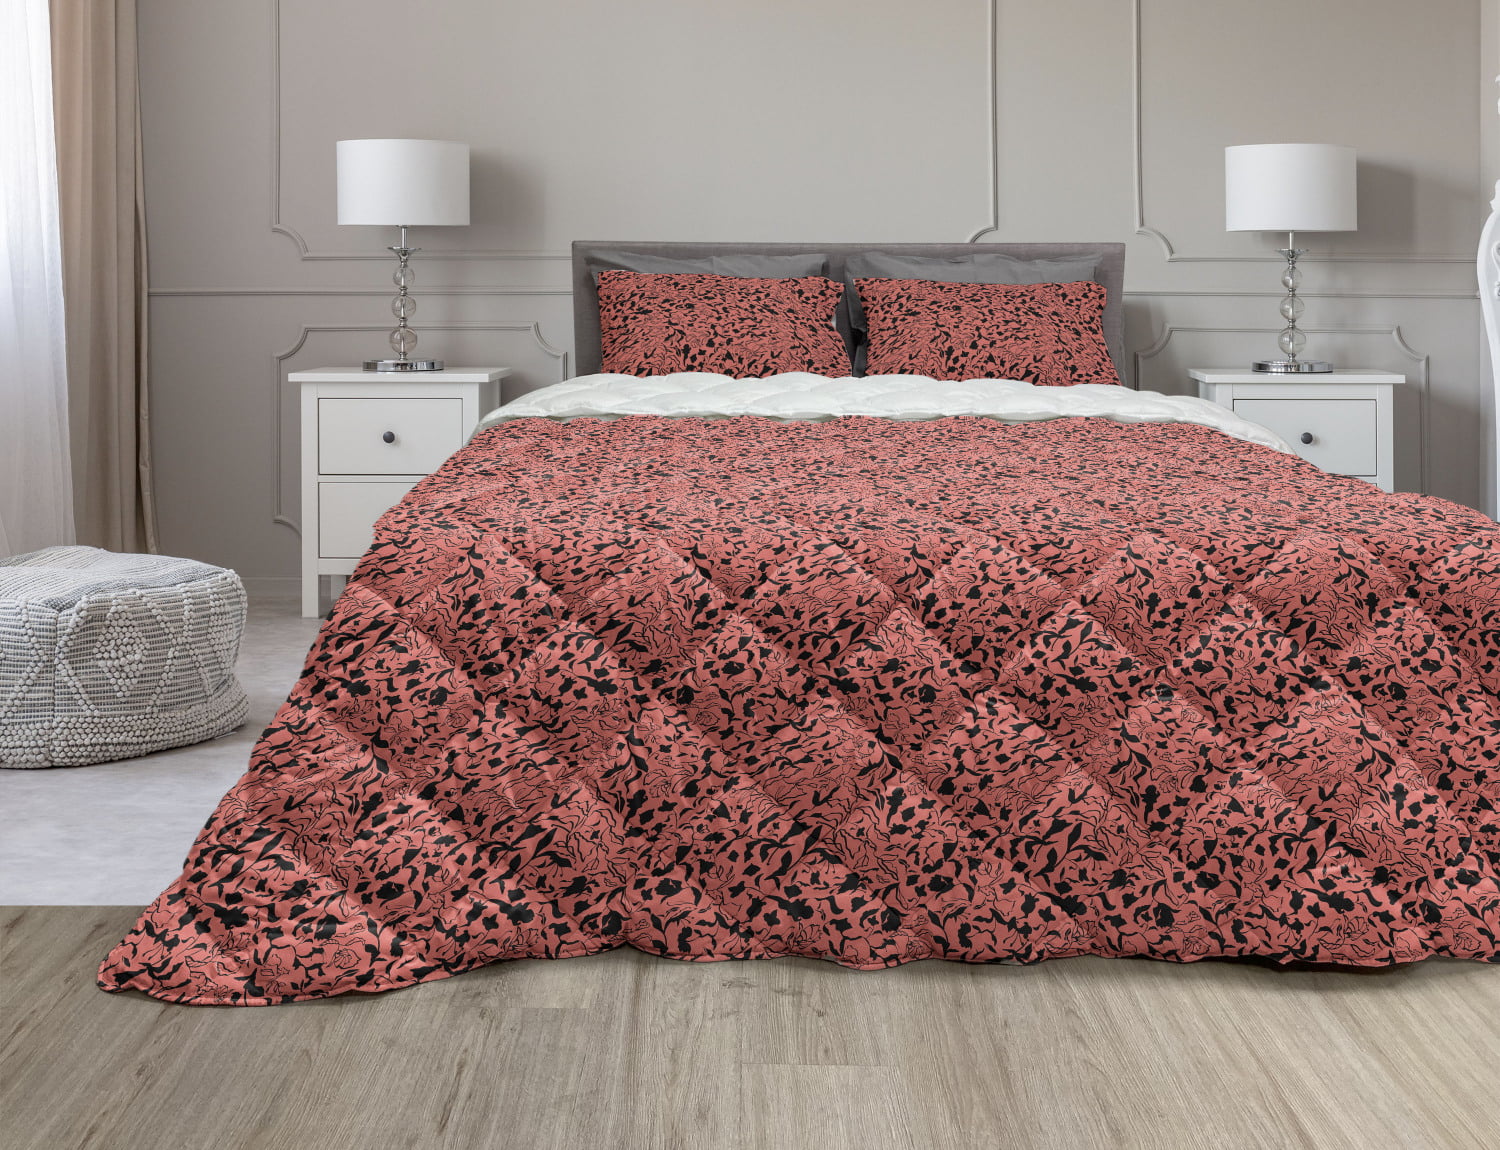 Tulip Leaf Quilt Duvet Cover Bedding Bed Set Reversible Grey or Coral 